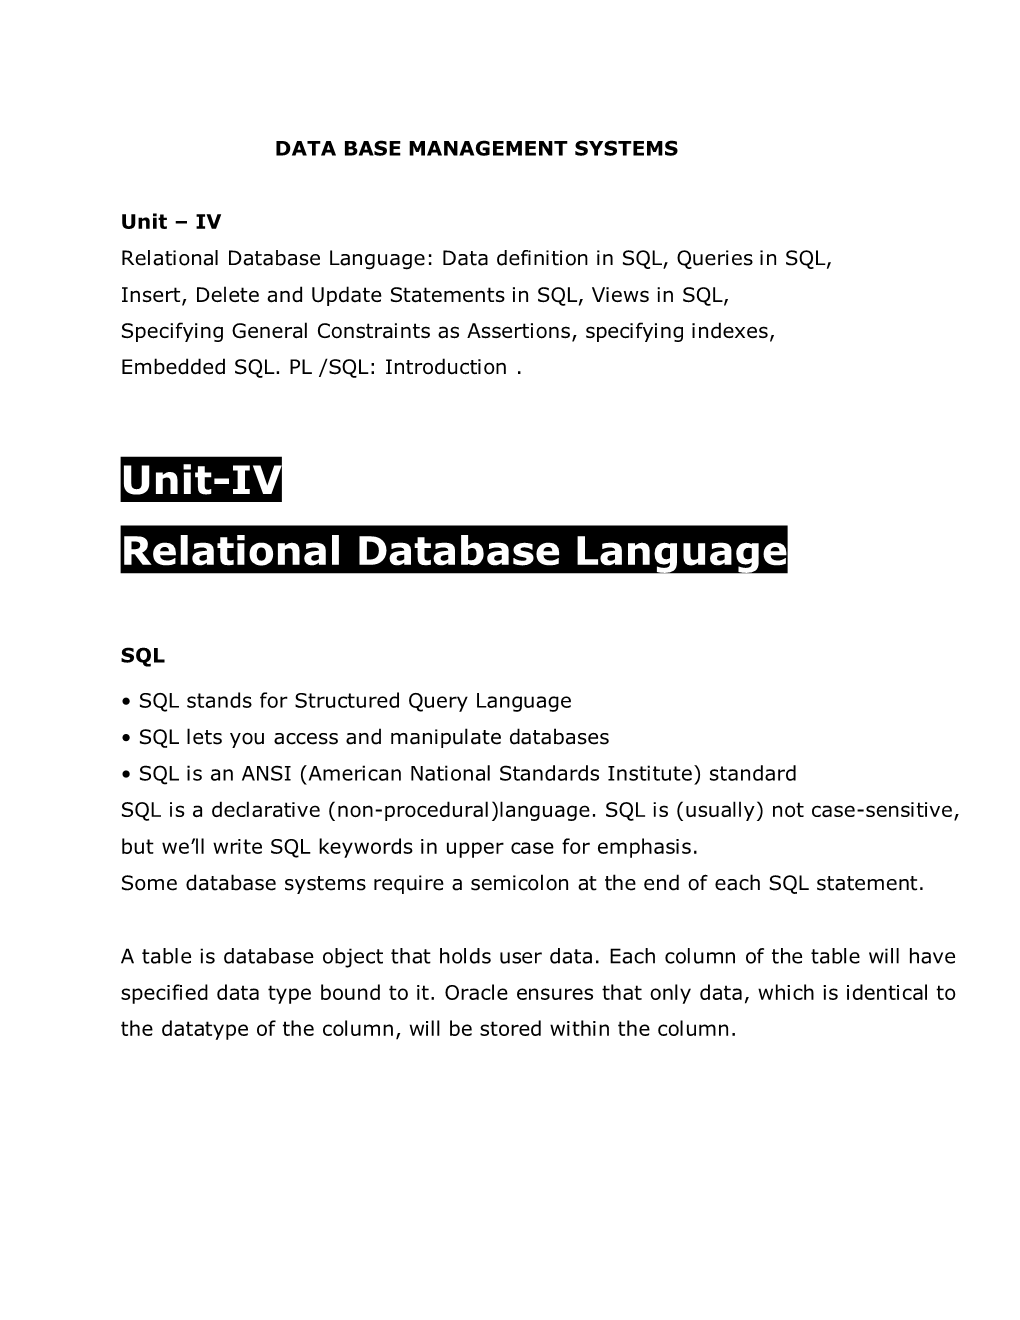 Unit-IV Relational Database Language